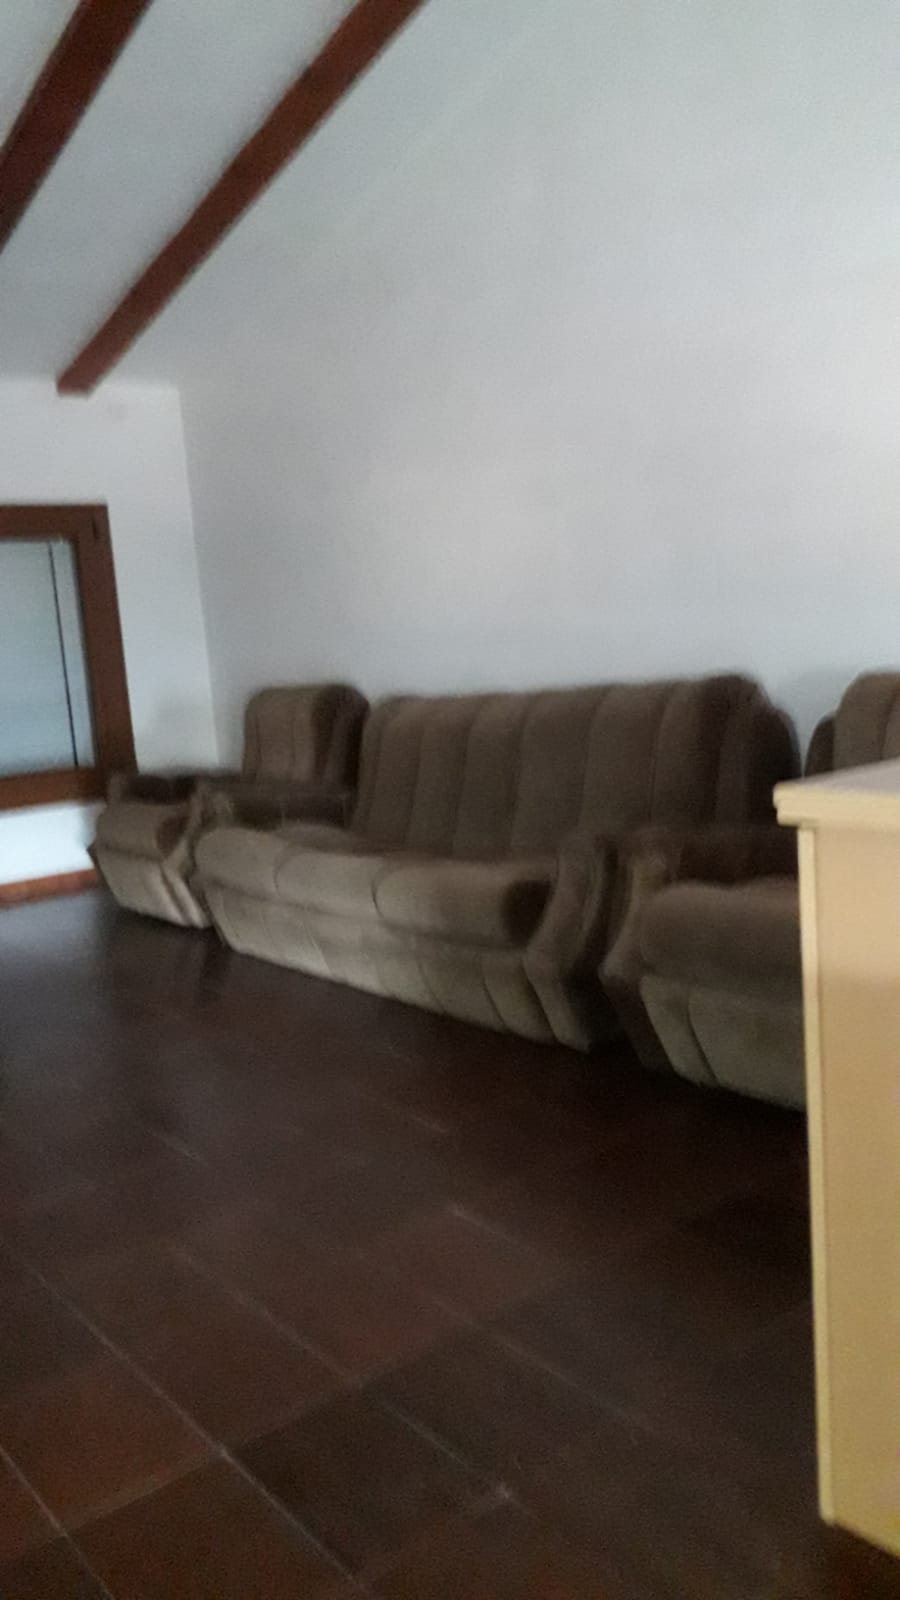 Vaciado de pisos en Vilanova d'Escornalbou | ¡Transforme su hogar en un espacio limpio y ordenado!